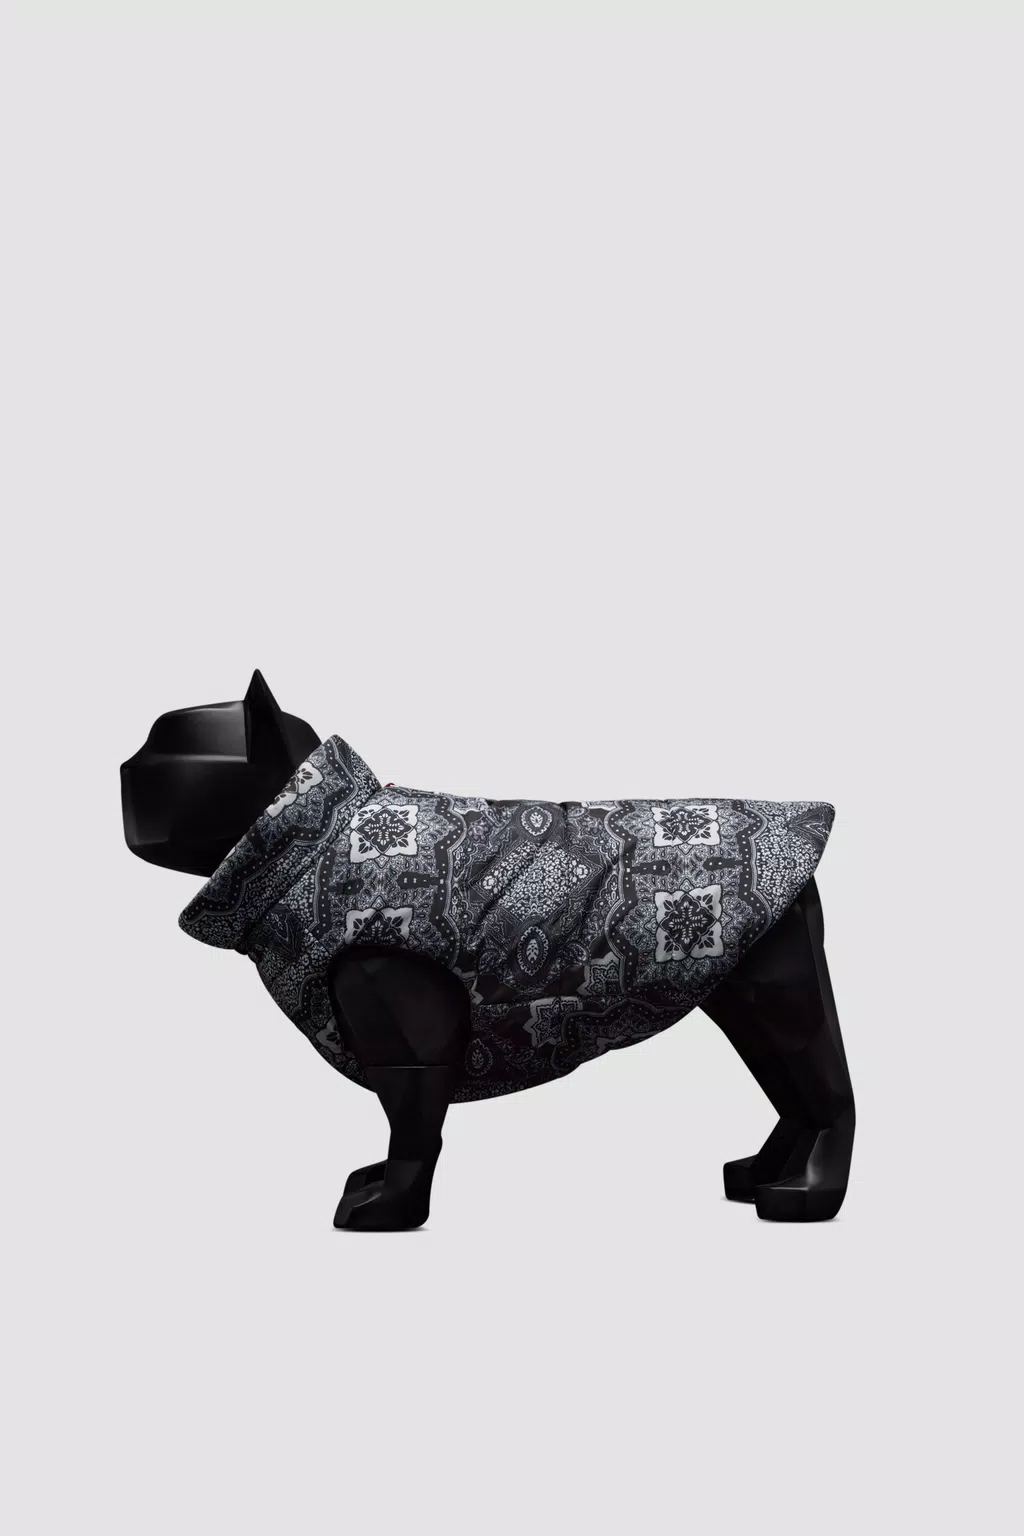 Bandana Print Reversible Dog Puffer Vest Gender Neutral Black & White Moncler 1